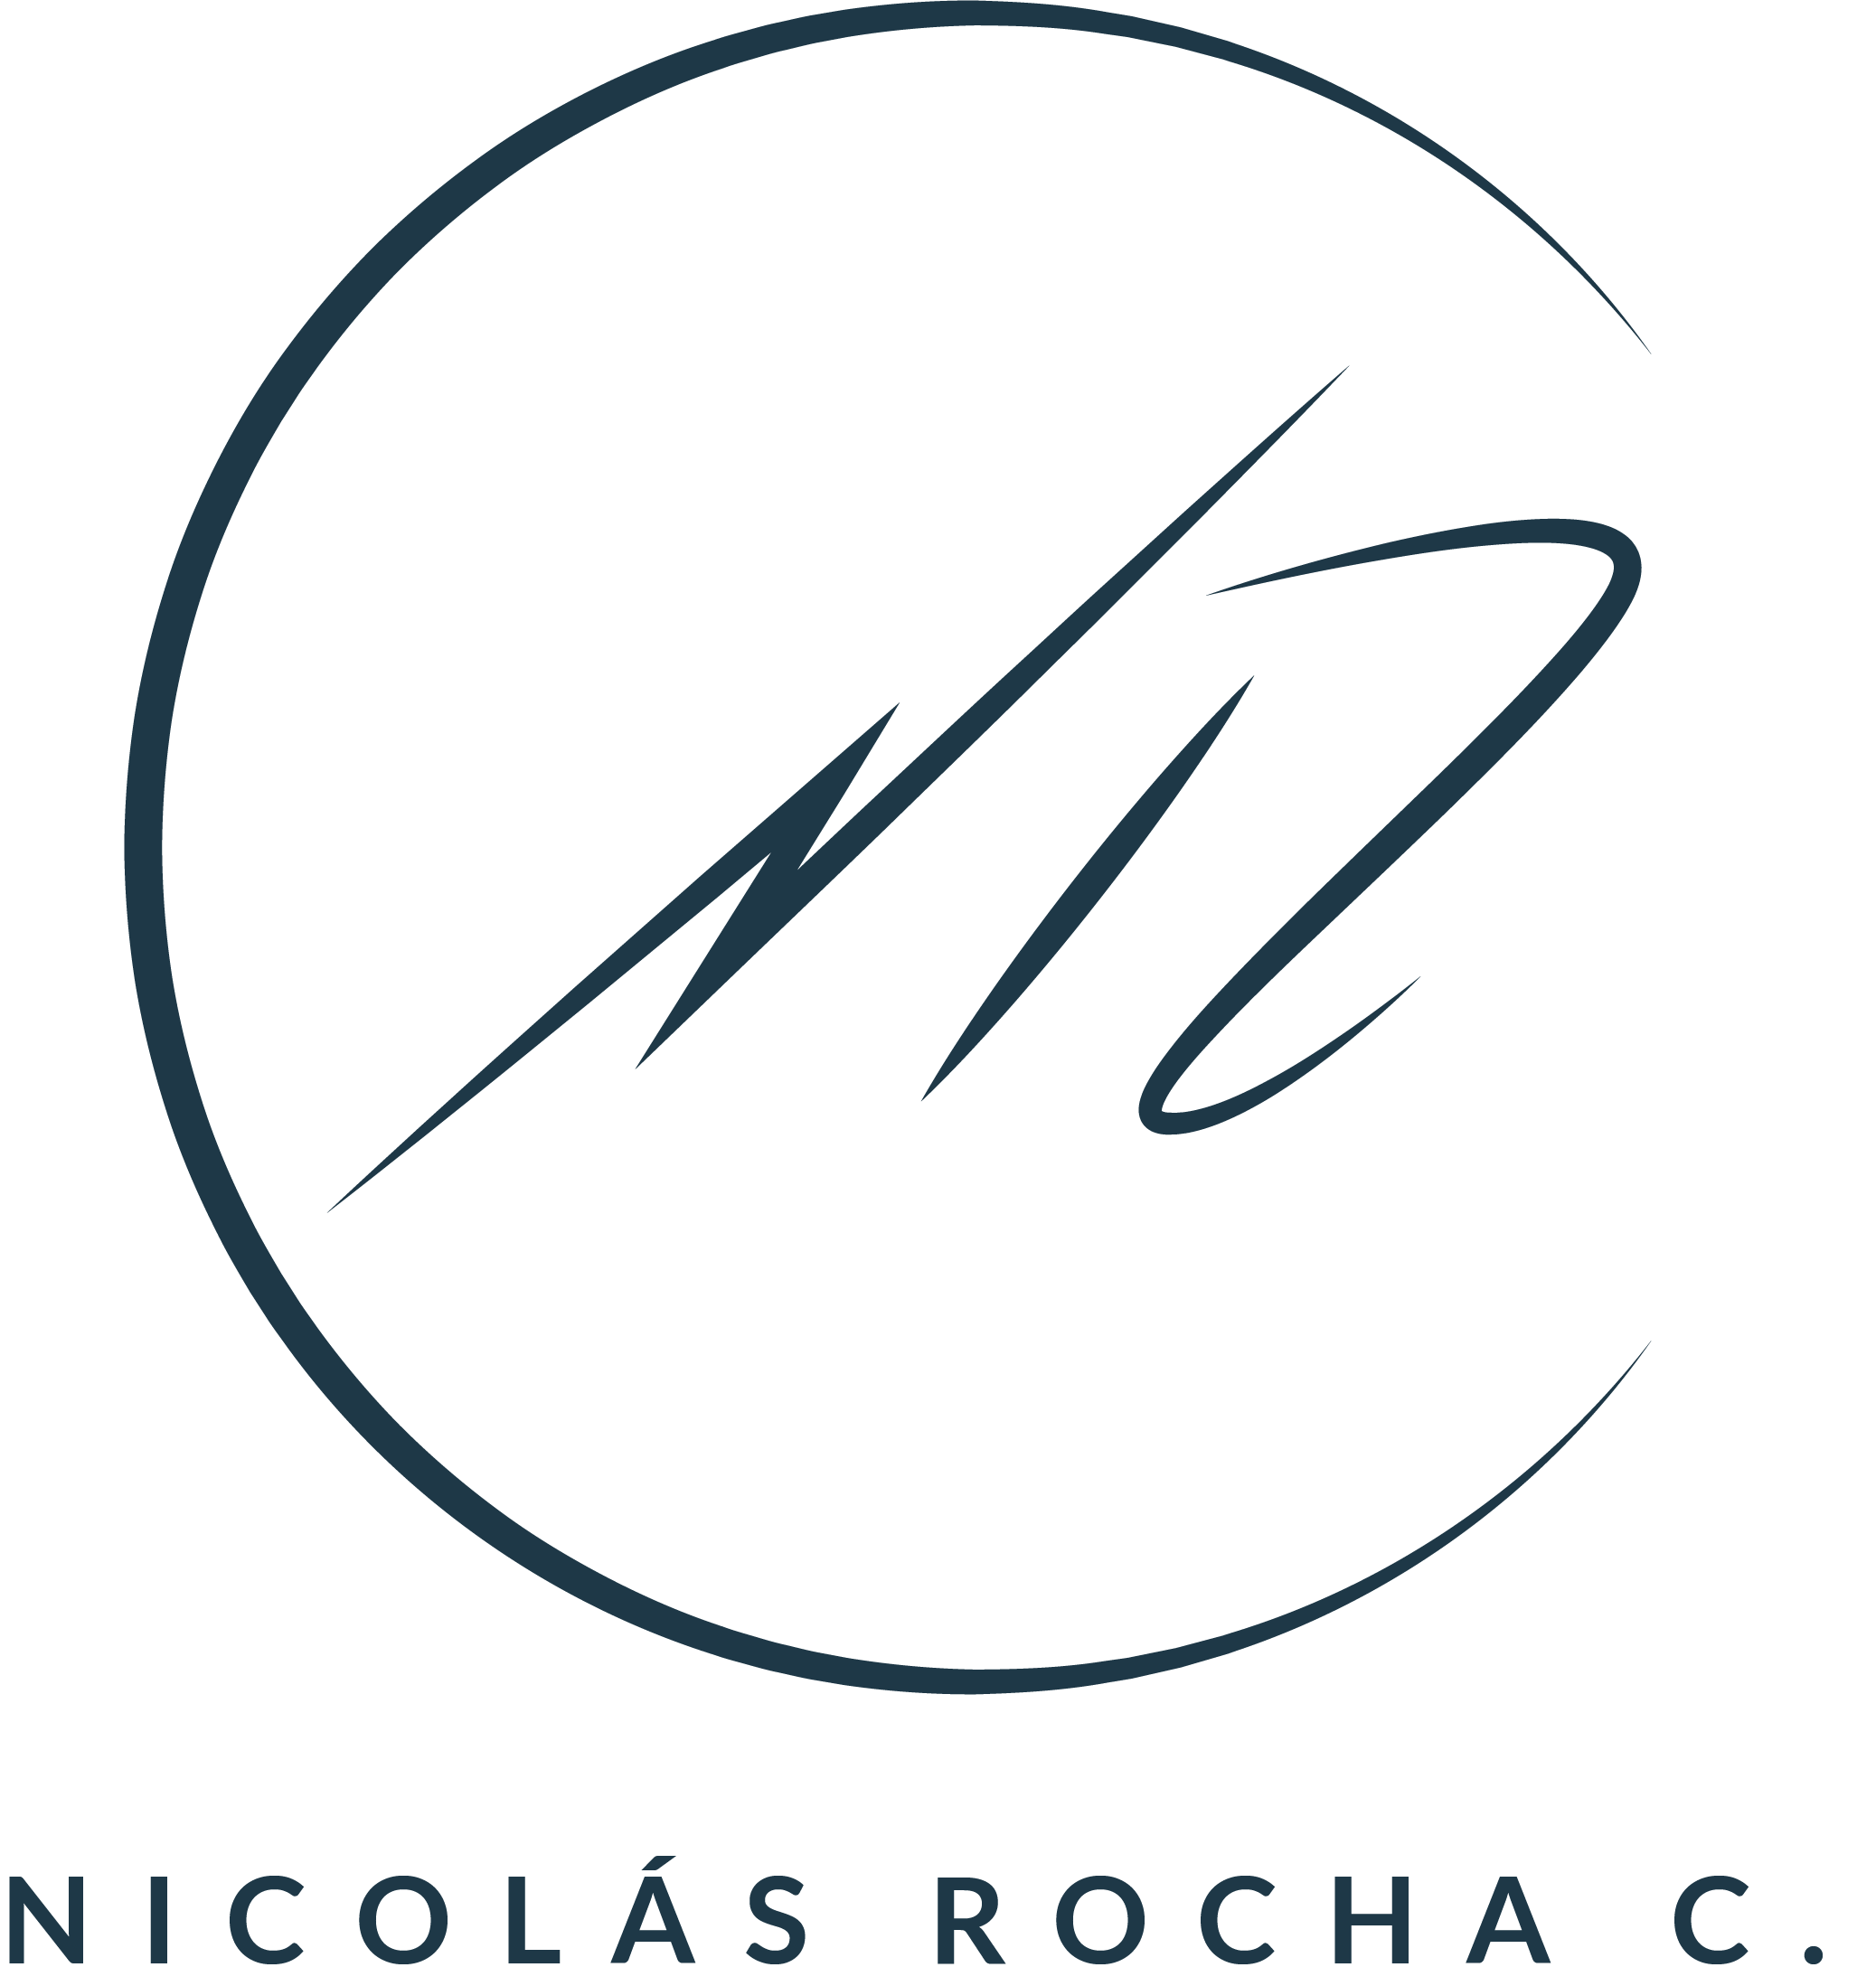 Nicorochac.com